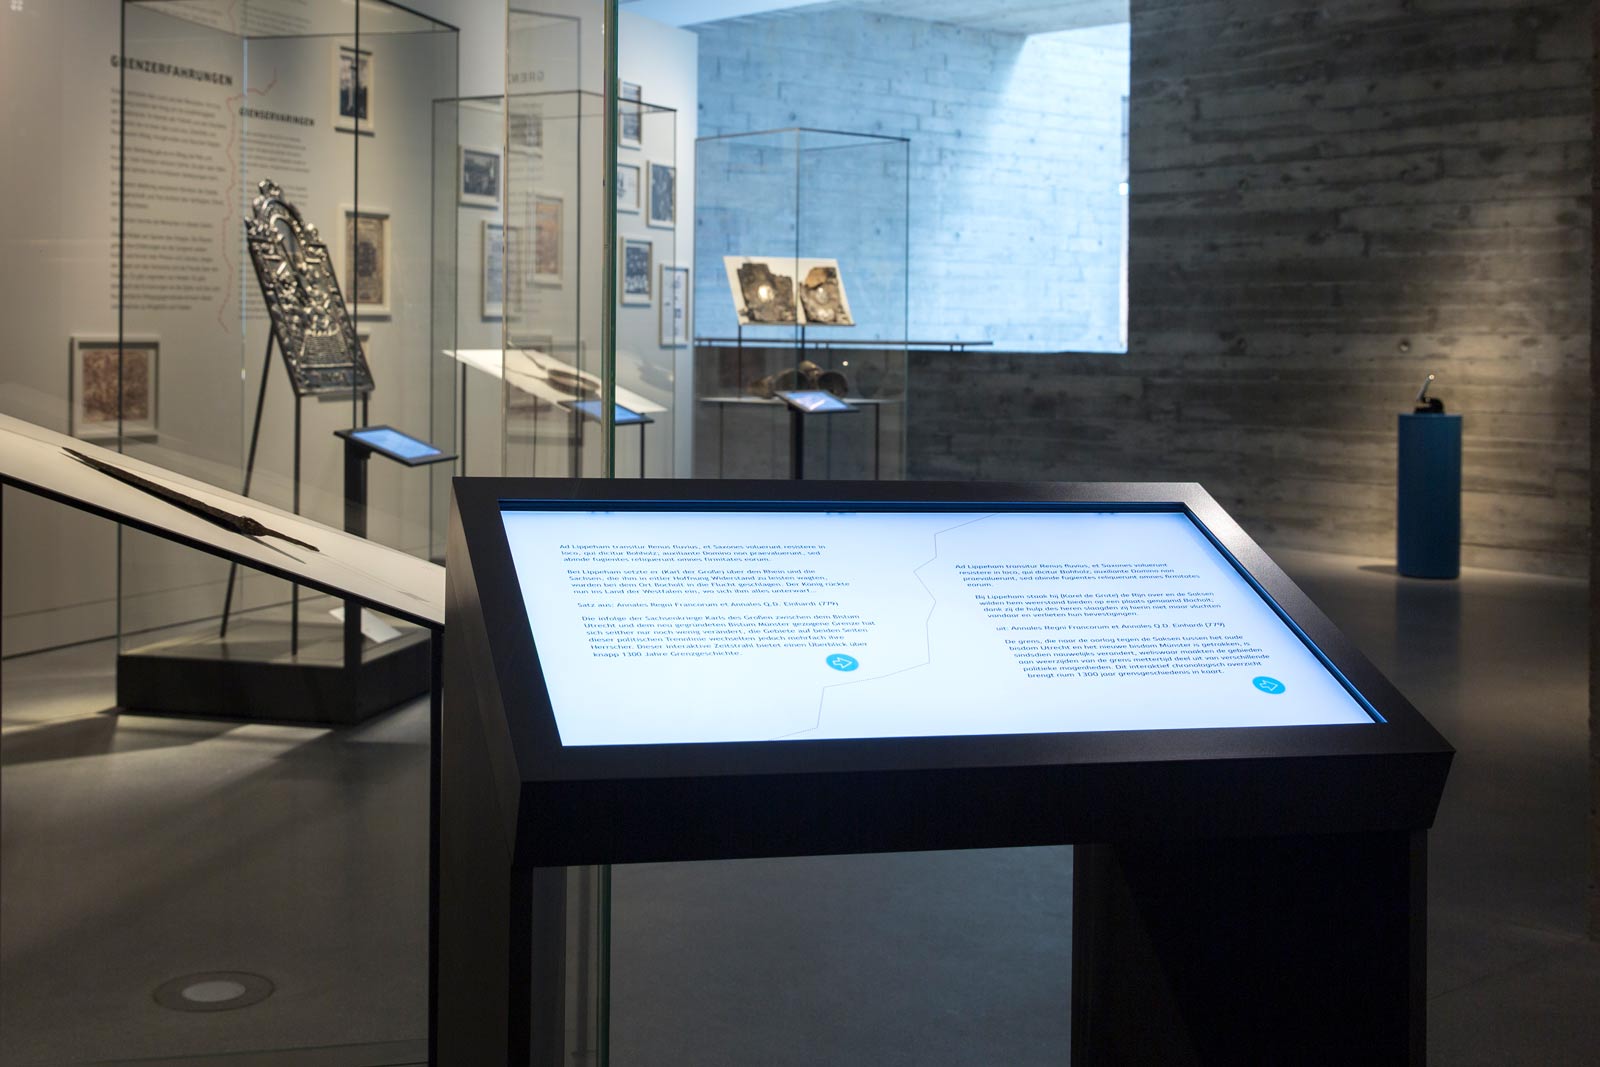 Das Referenzbild für Ausstellungsgestaltung aus der Dauerausstellung Grenze zeigt eine Medienstation.